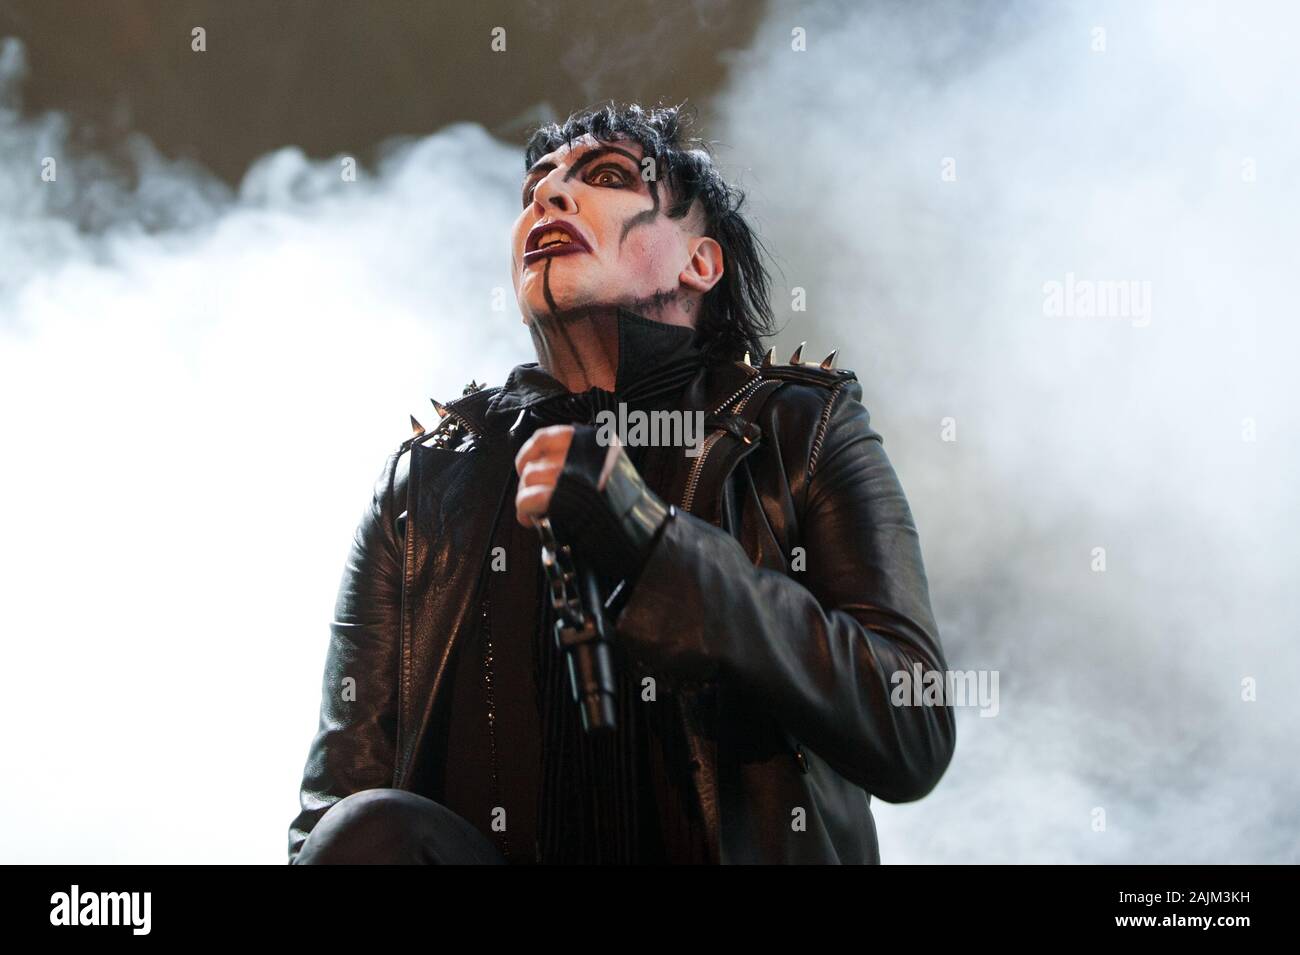 Milano Italia 11 luglio 2012 ,concerto dal vivo di Marilyn Manson presso l' Ippodromo del galoppo' : Marilyn Manson durante il concerto Foto Stock